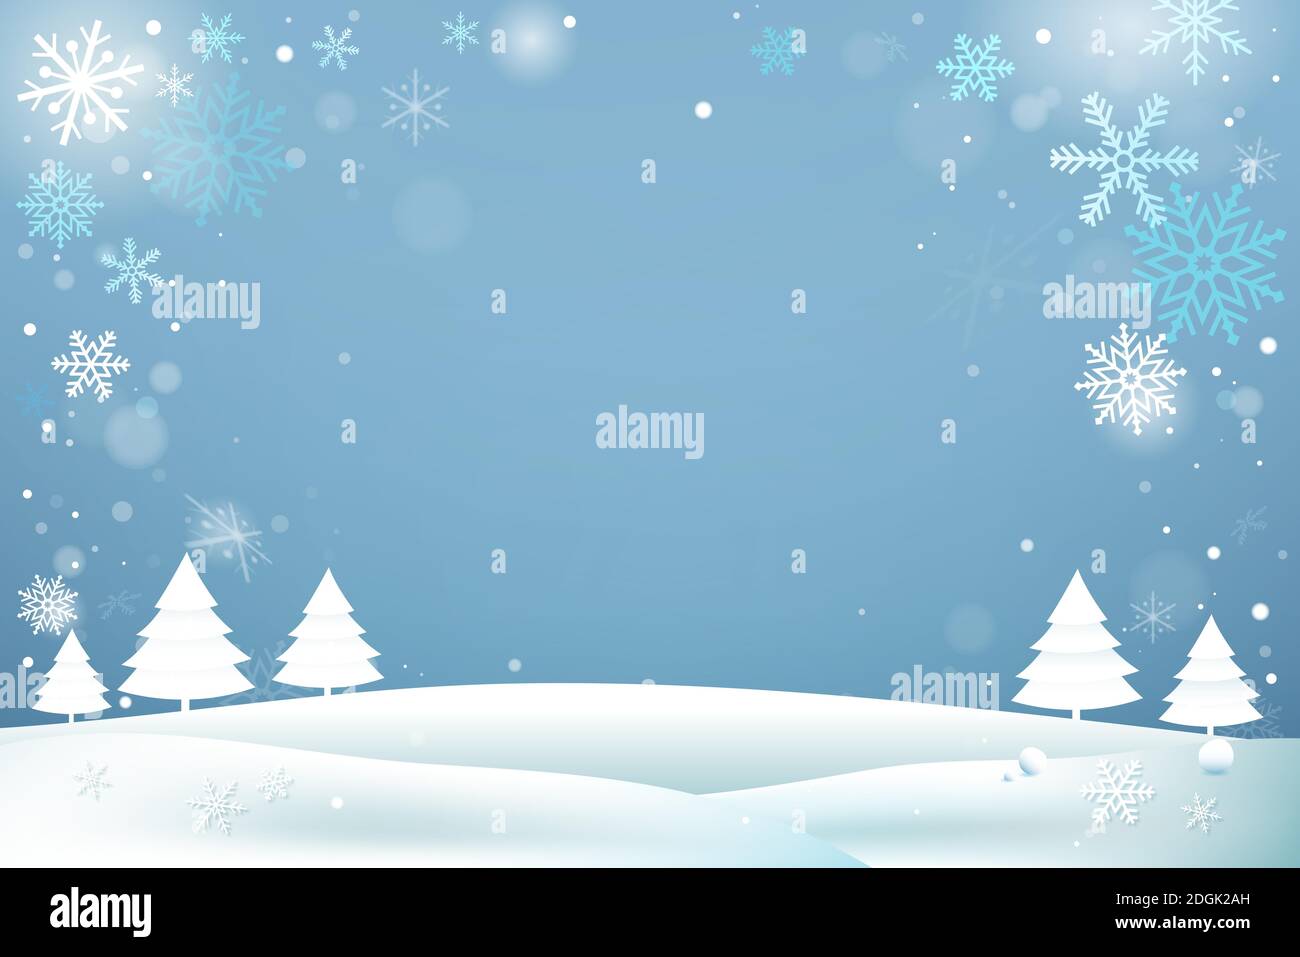 Winter Schnee Hintergrund mit Weihnachtsbäumen, Schneeflocken und leeren Raum in der Mitte Stock Vektor